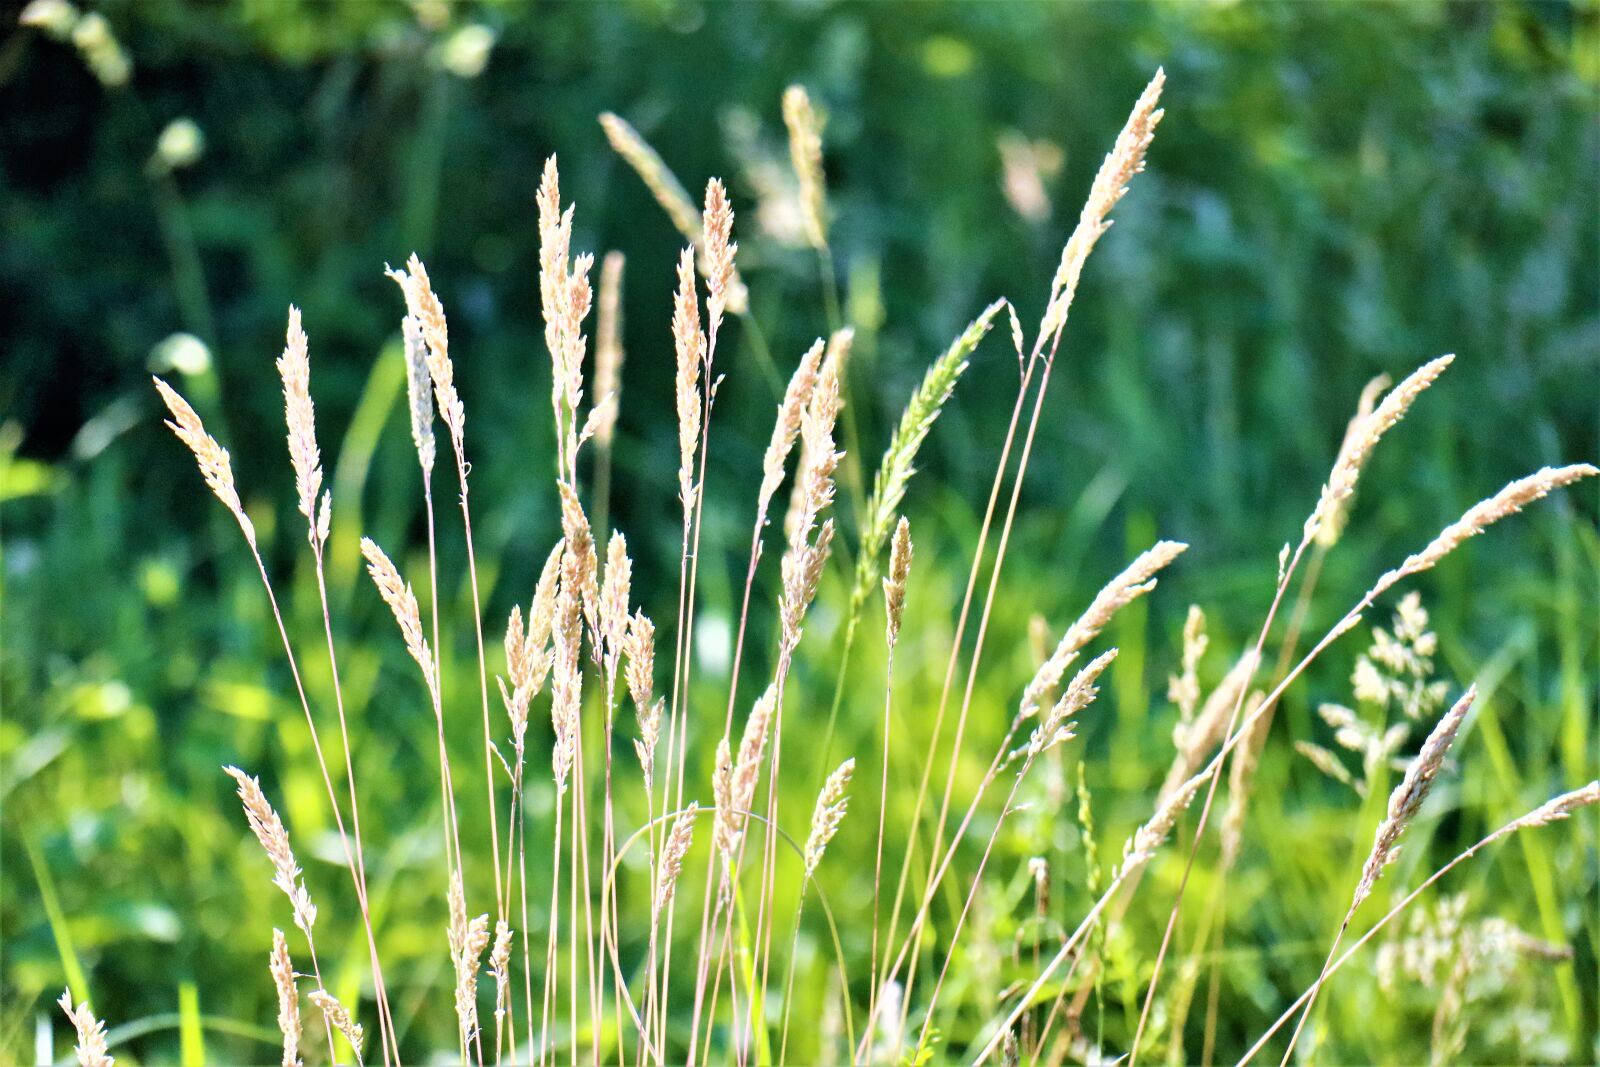 Canon EOS M6 sample photo. Grass, green, meadow photography